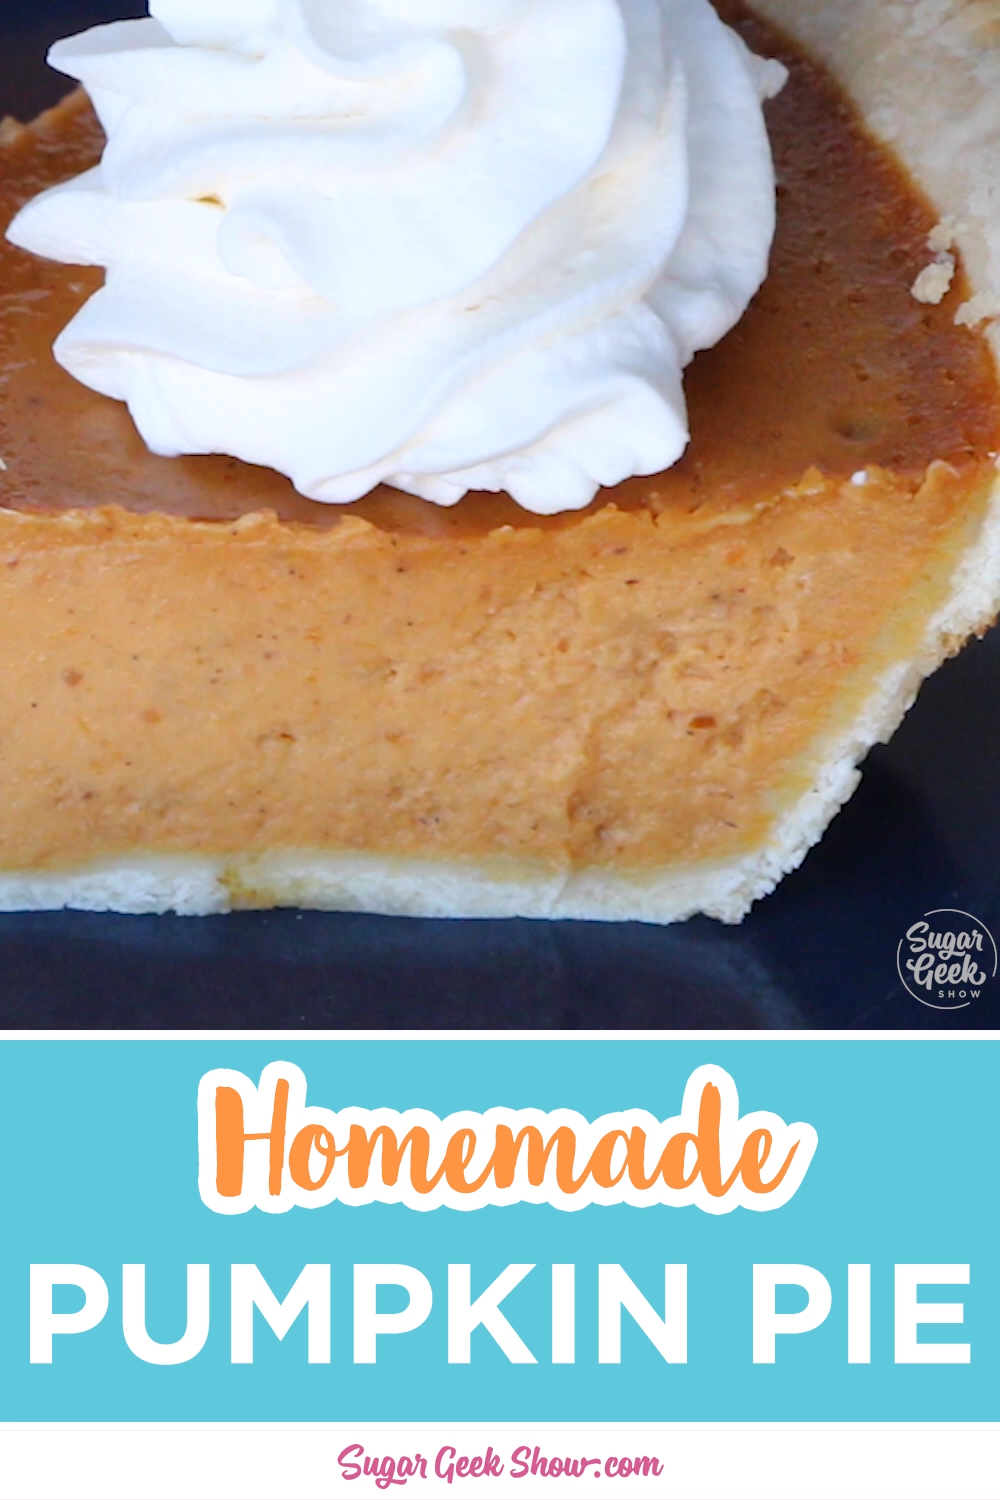 19 pumpkin pie recipe easy from scratch ideas